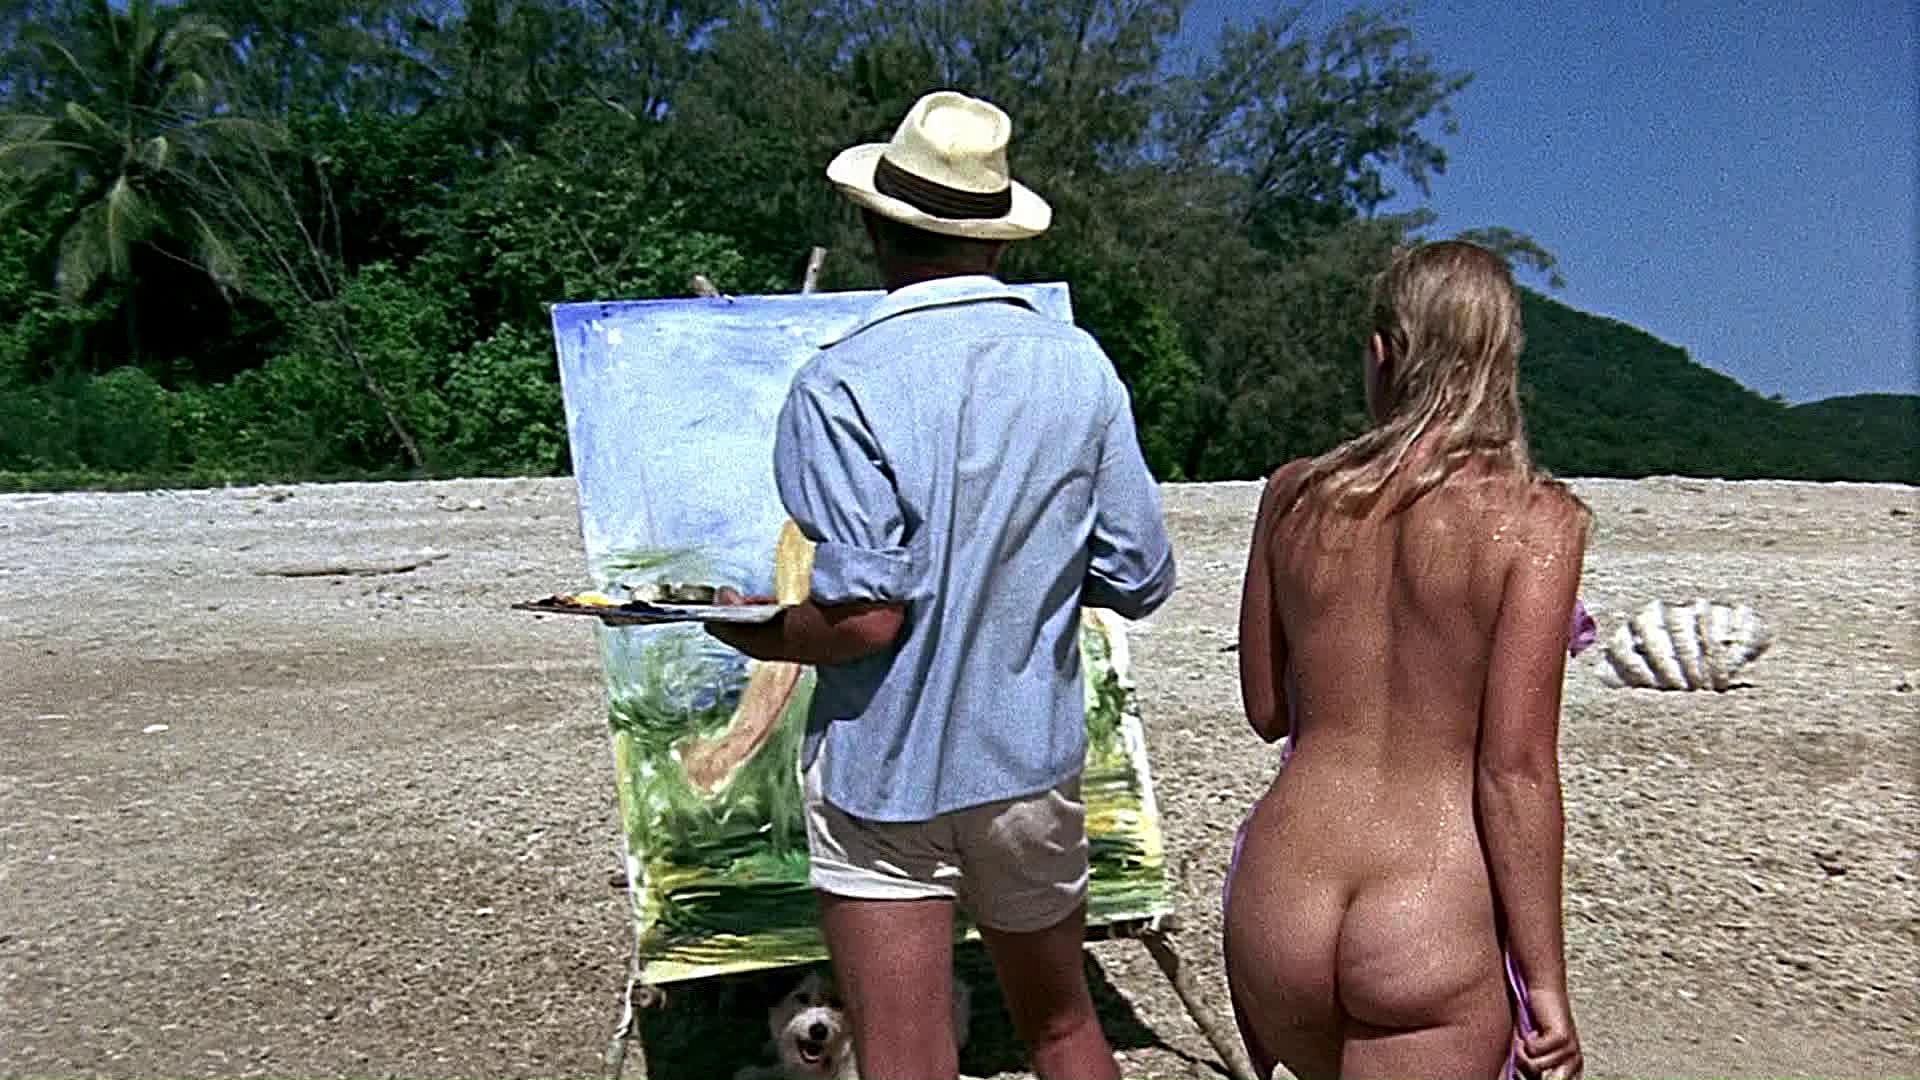 Helen Mirren nude (29 photos)